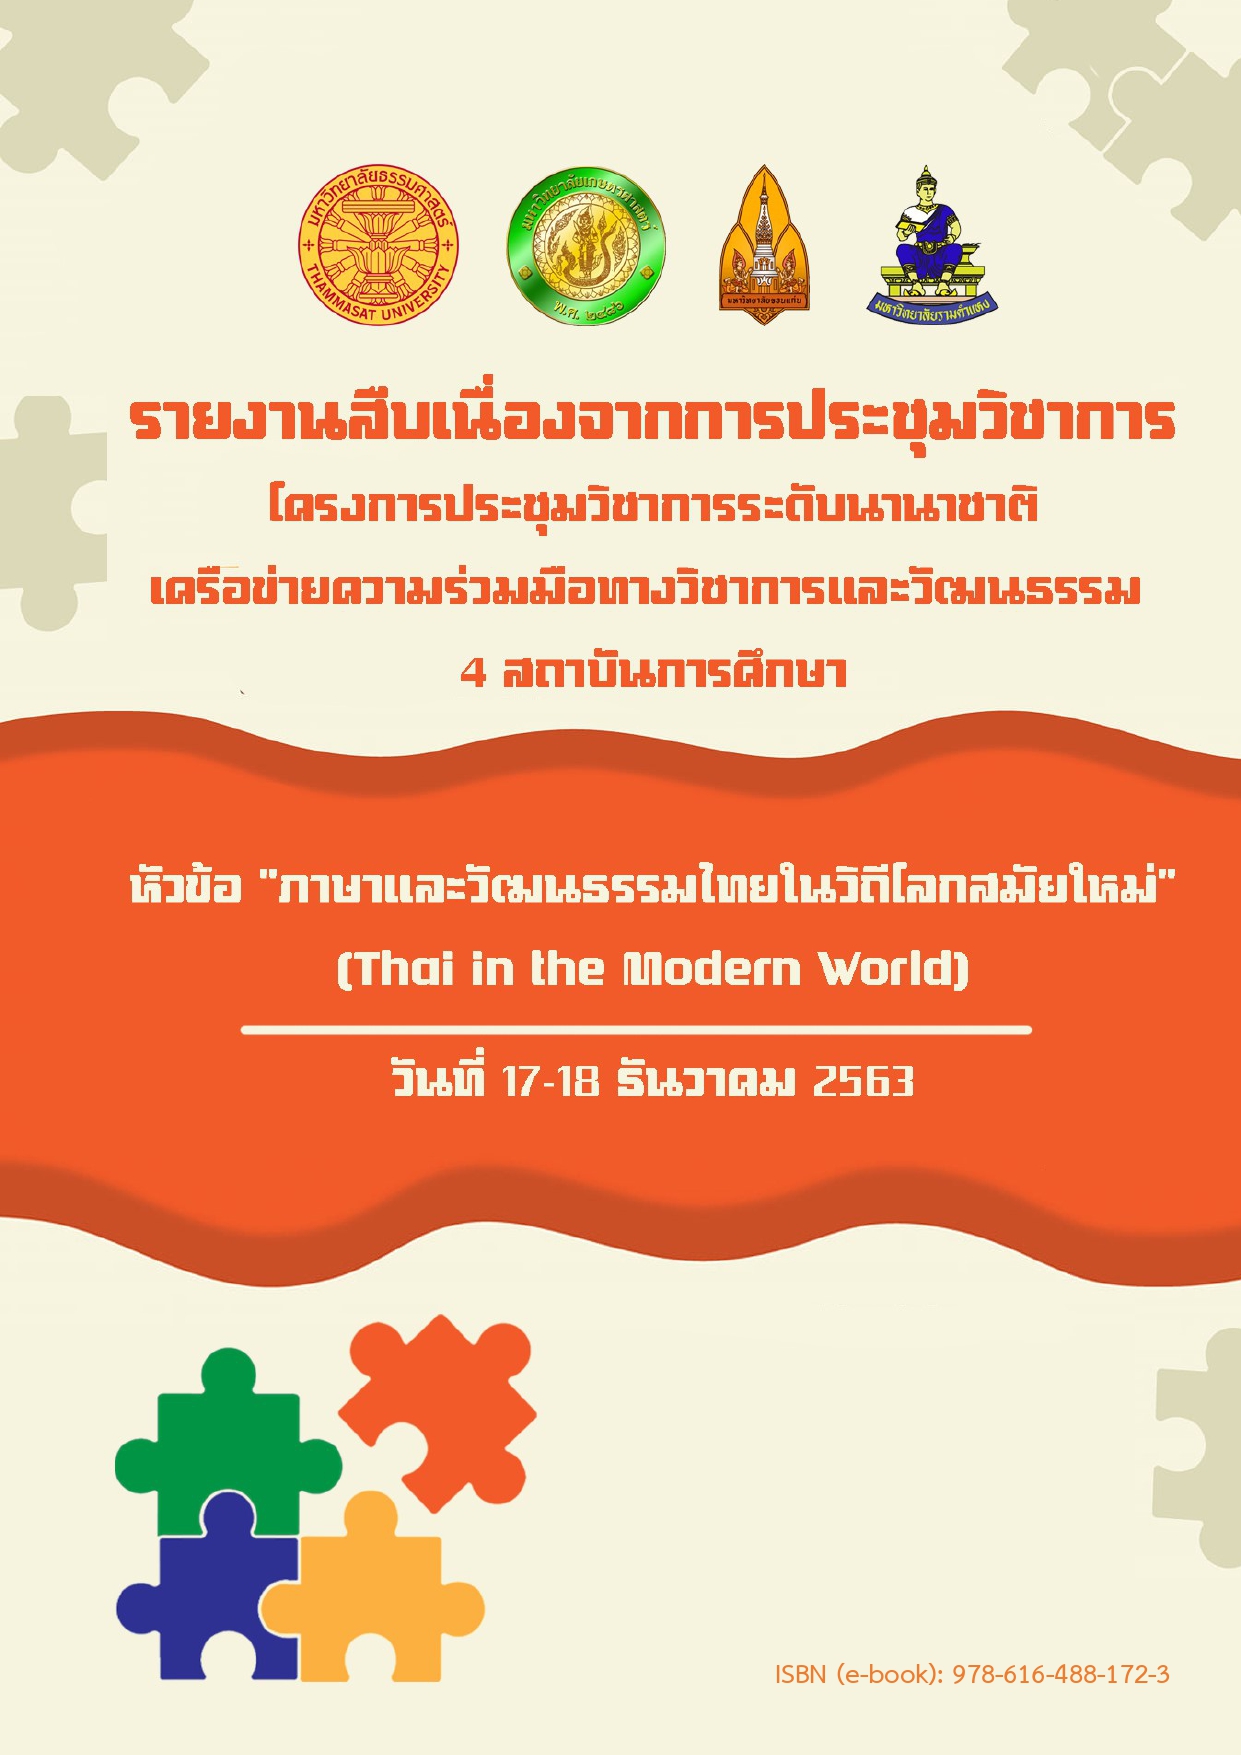 โครงการประชุมวิชาการระดับนานาชาติเครือข่ายความร่วมมือทางวิชาการและวัฒนธรรม 4 สถาบันการศึกษา หัวข้อ “ภาษาและวัฒนธรรมไทยในวิถีโลกสมัยใหม่” (Thai in the Modern World) ในรูปแบบออนไลน์. 17-18 ธันวาคม 2563.